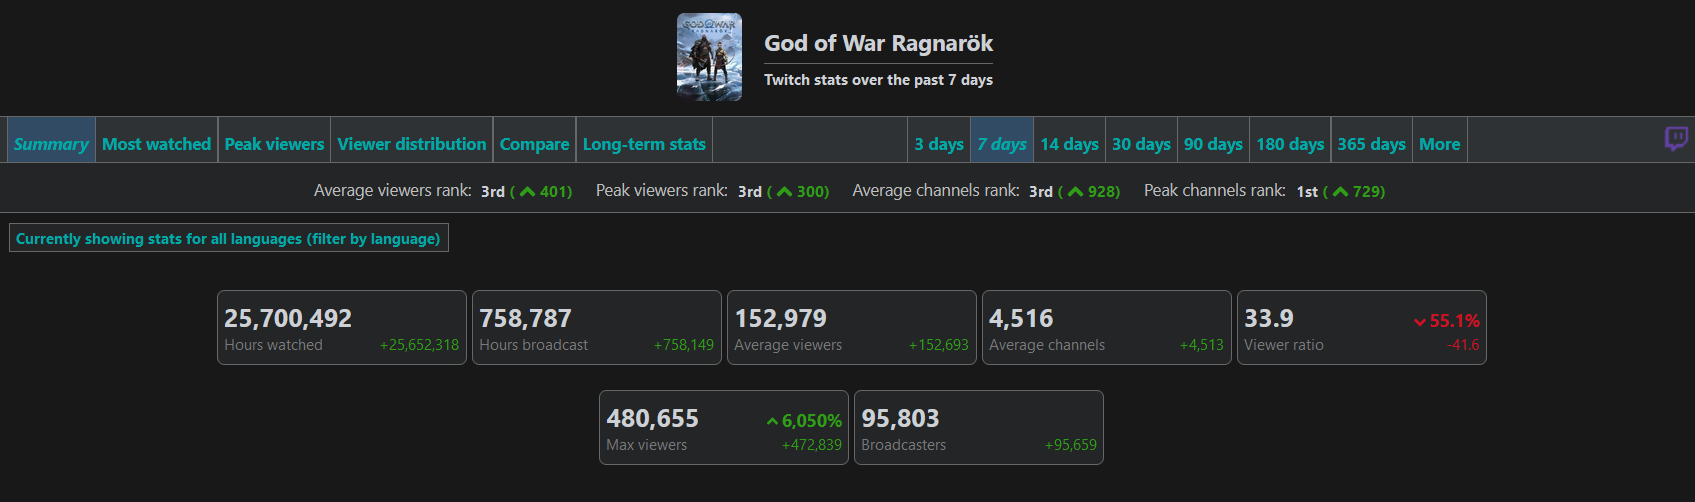 480 tysięcy widzów i 22 miliony godzin oglądania: statystyki God of War Ragnarok na Twitchu pokazują zainteresowanie fanów grą-2